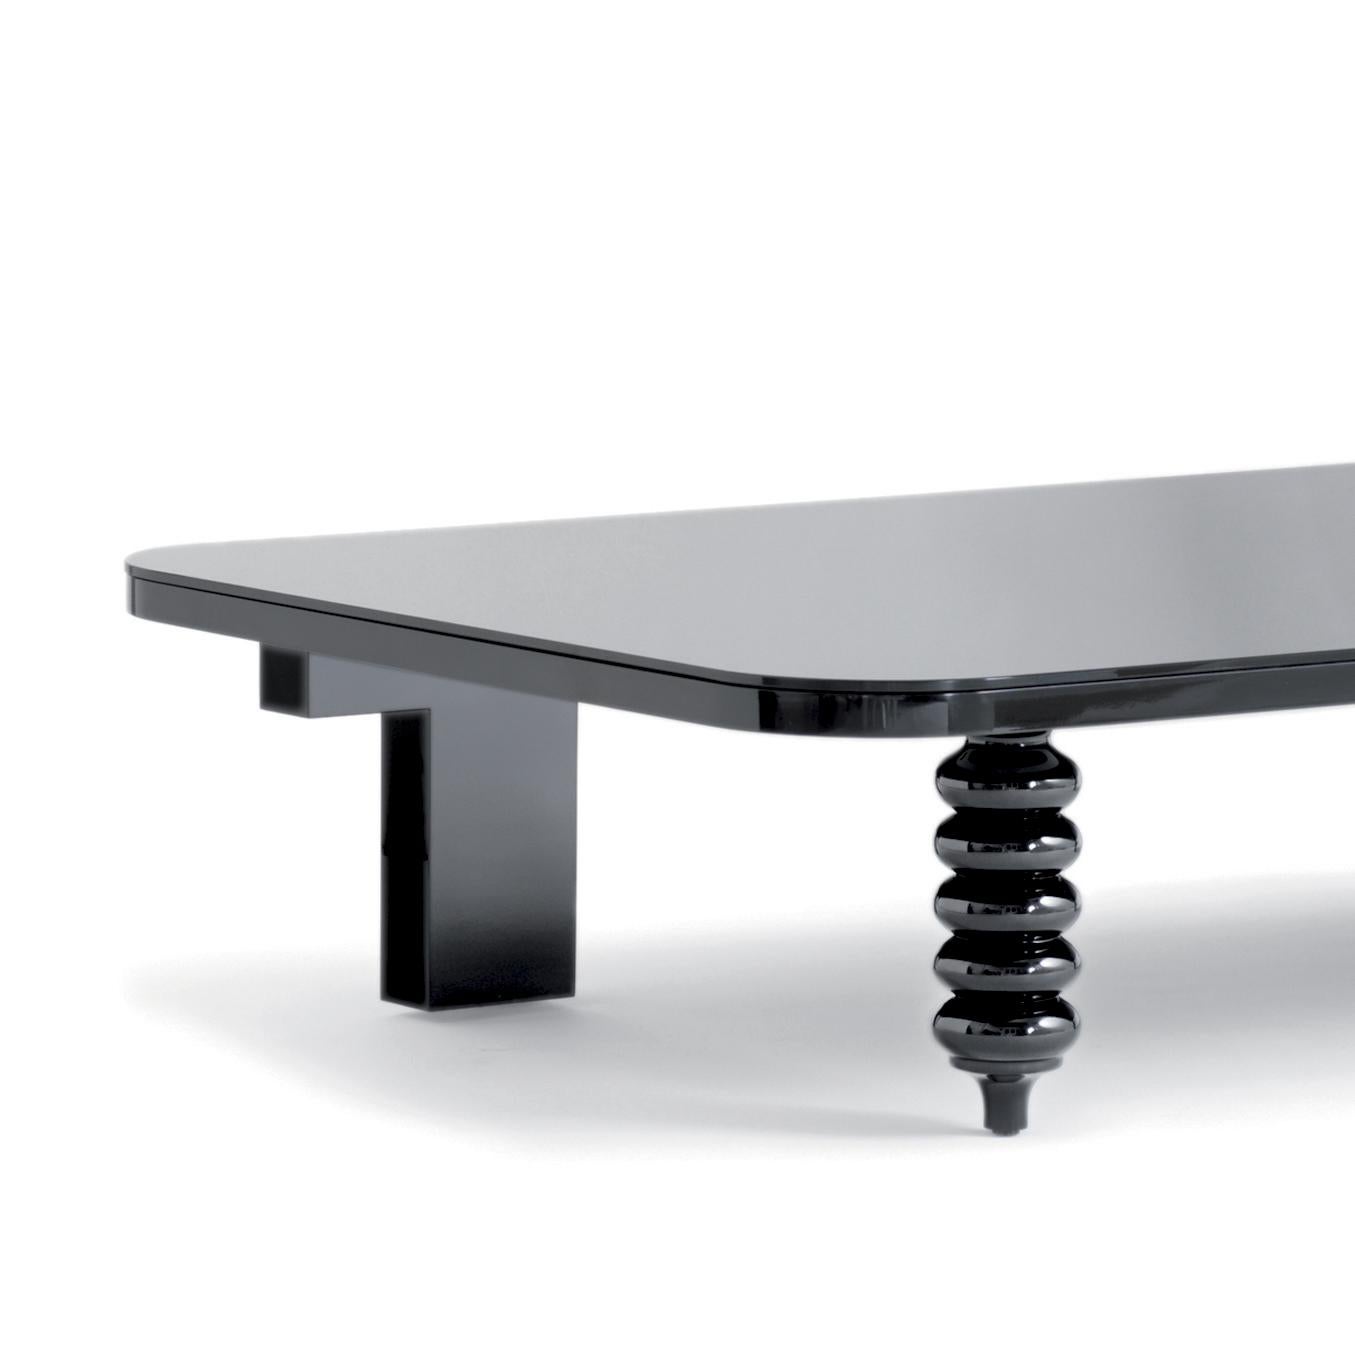 Niedriger Tisch, entworfen von Jaime Hayon.
Hergestellt von BD Barcelona Design.

Sockel und Beine aus gedrechseltem massivem Erlenholz MDF, schwarz glänzend lackiert 

Maße: 100 x 160 x 35 cm.